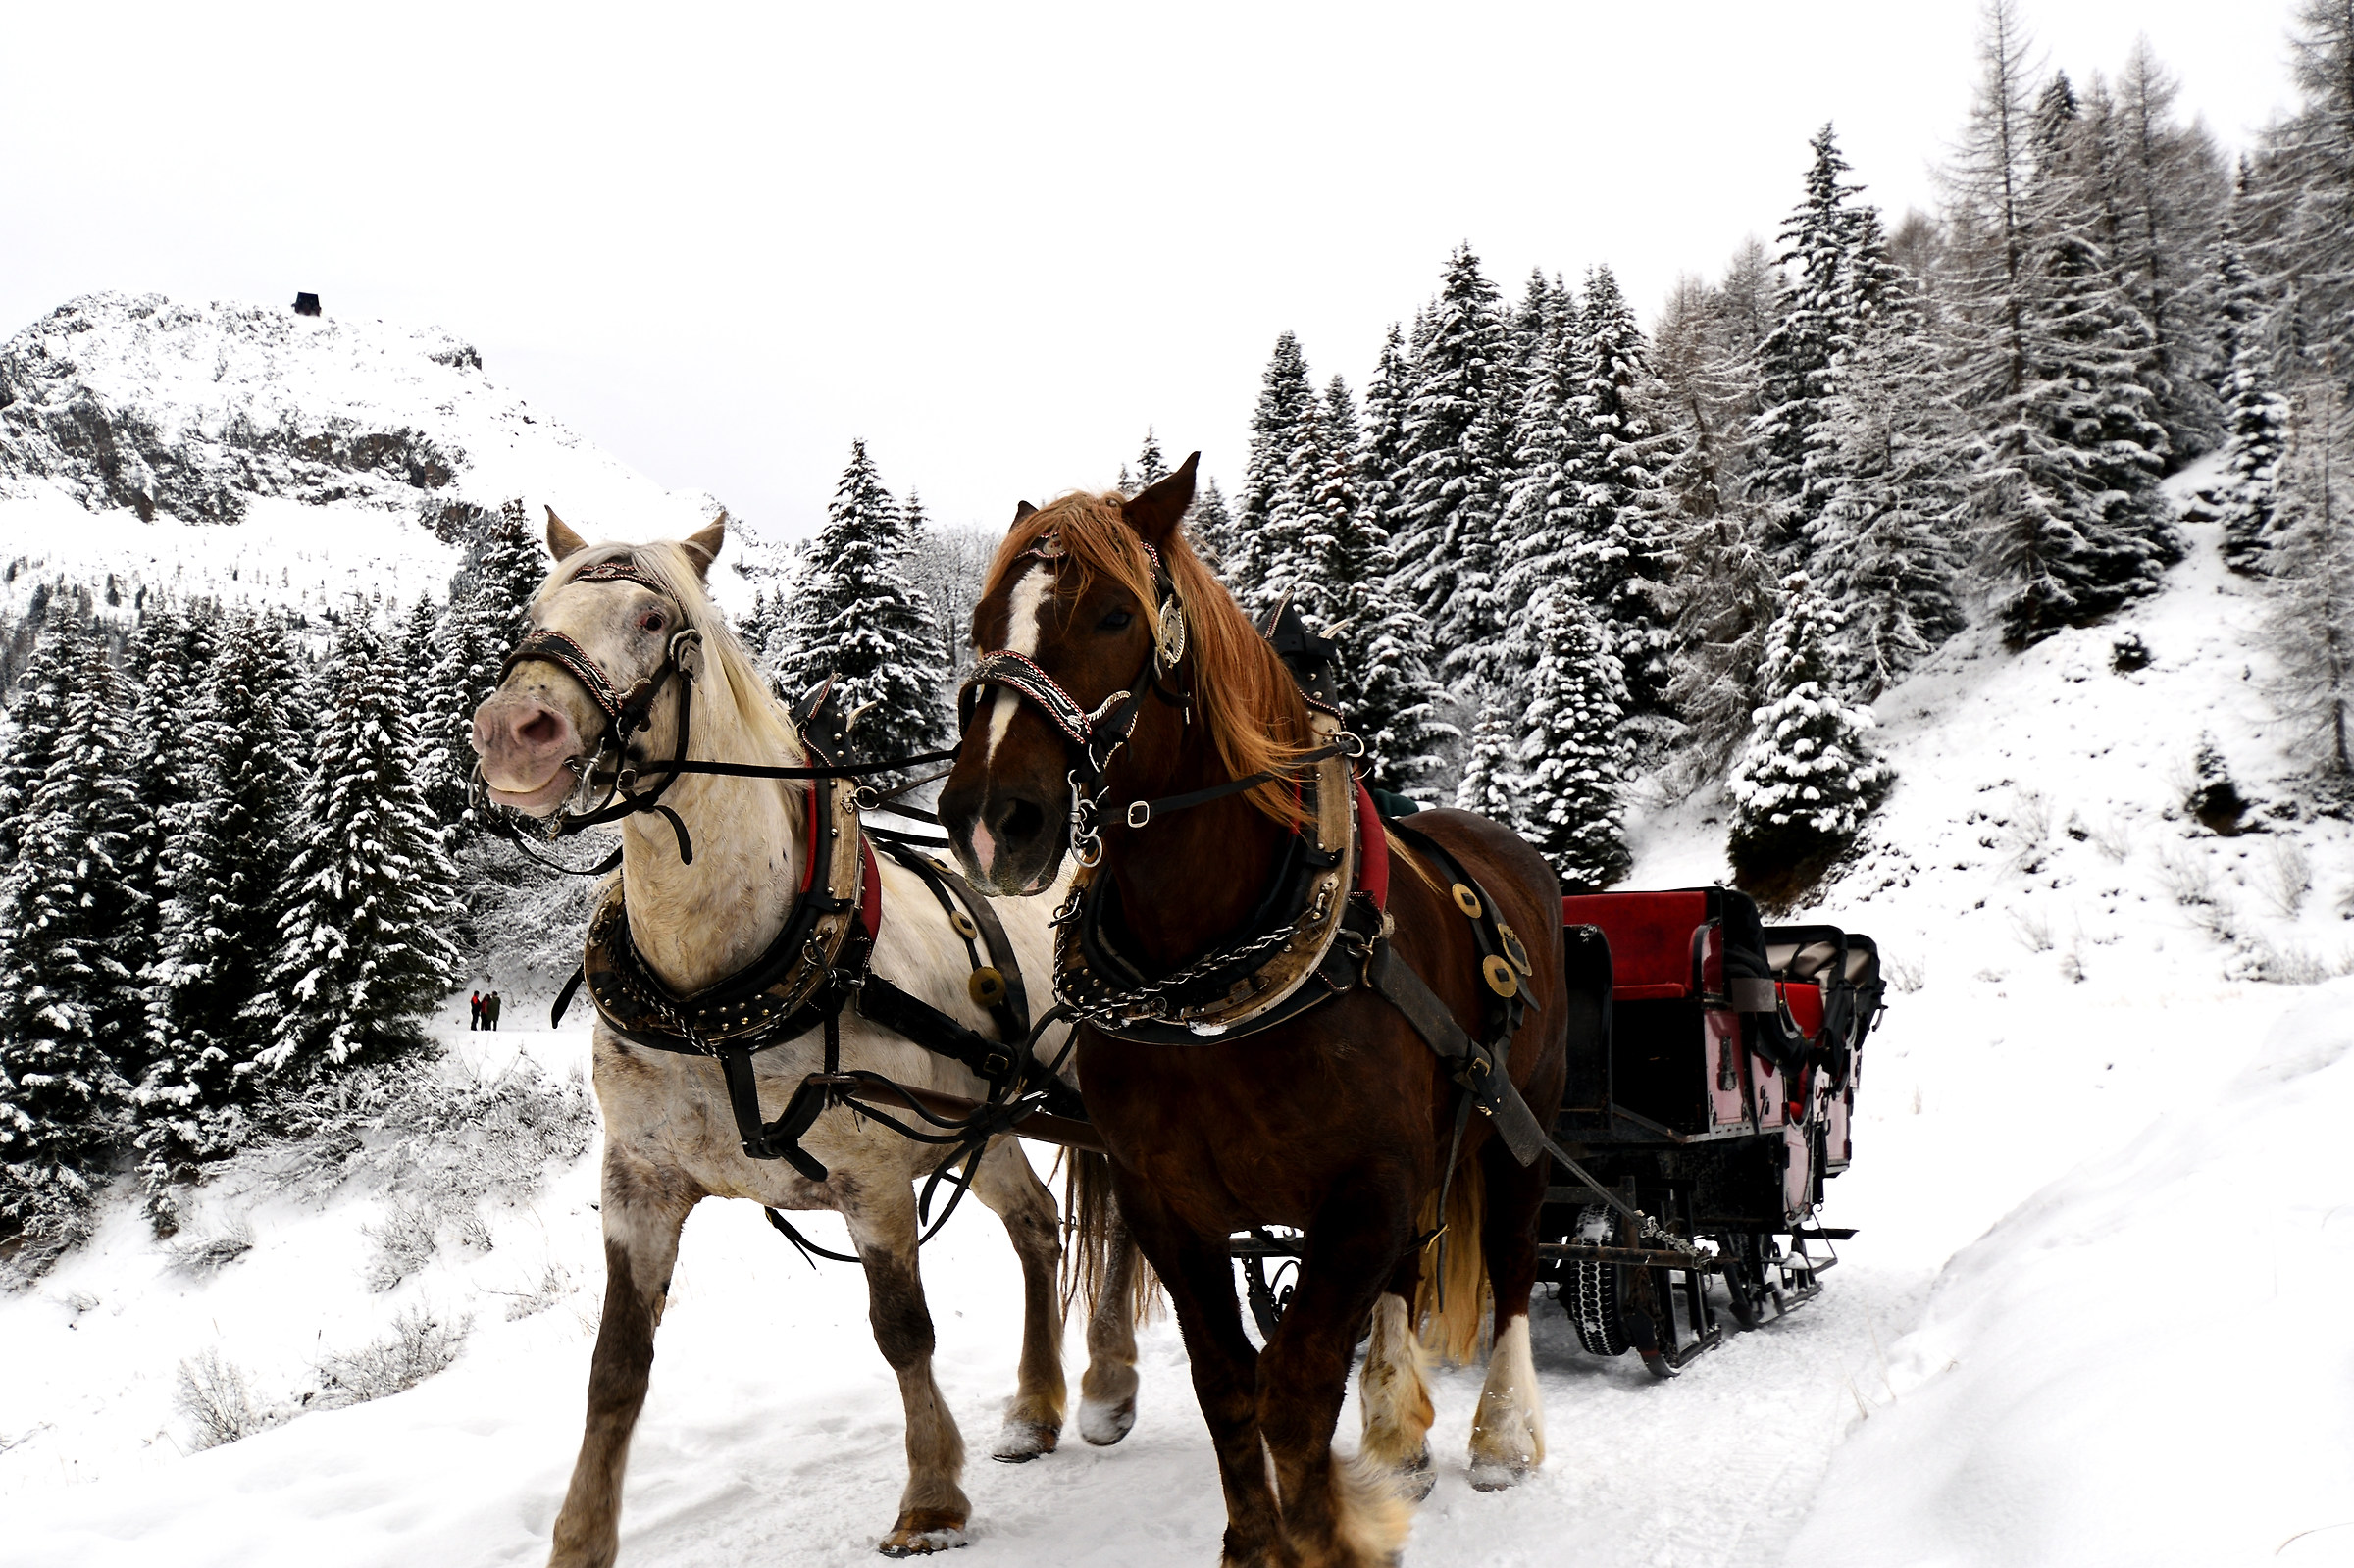 Horse-drawn sleigh...